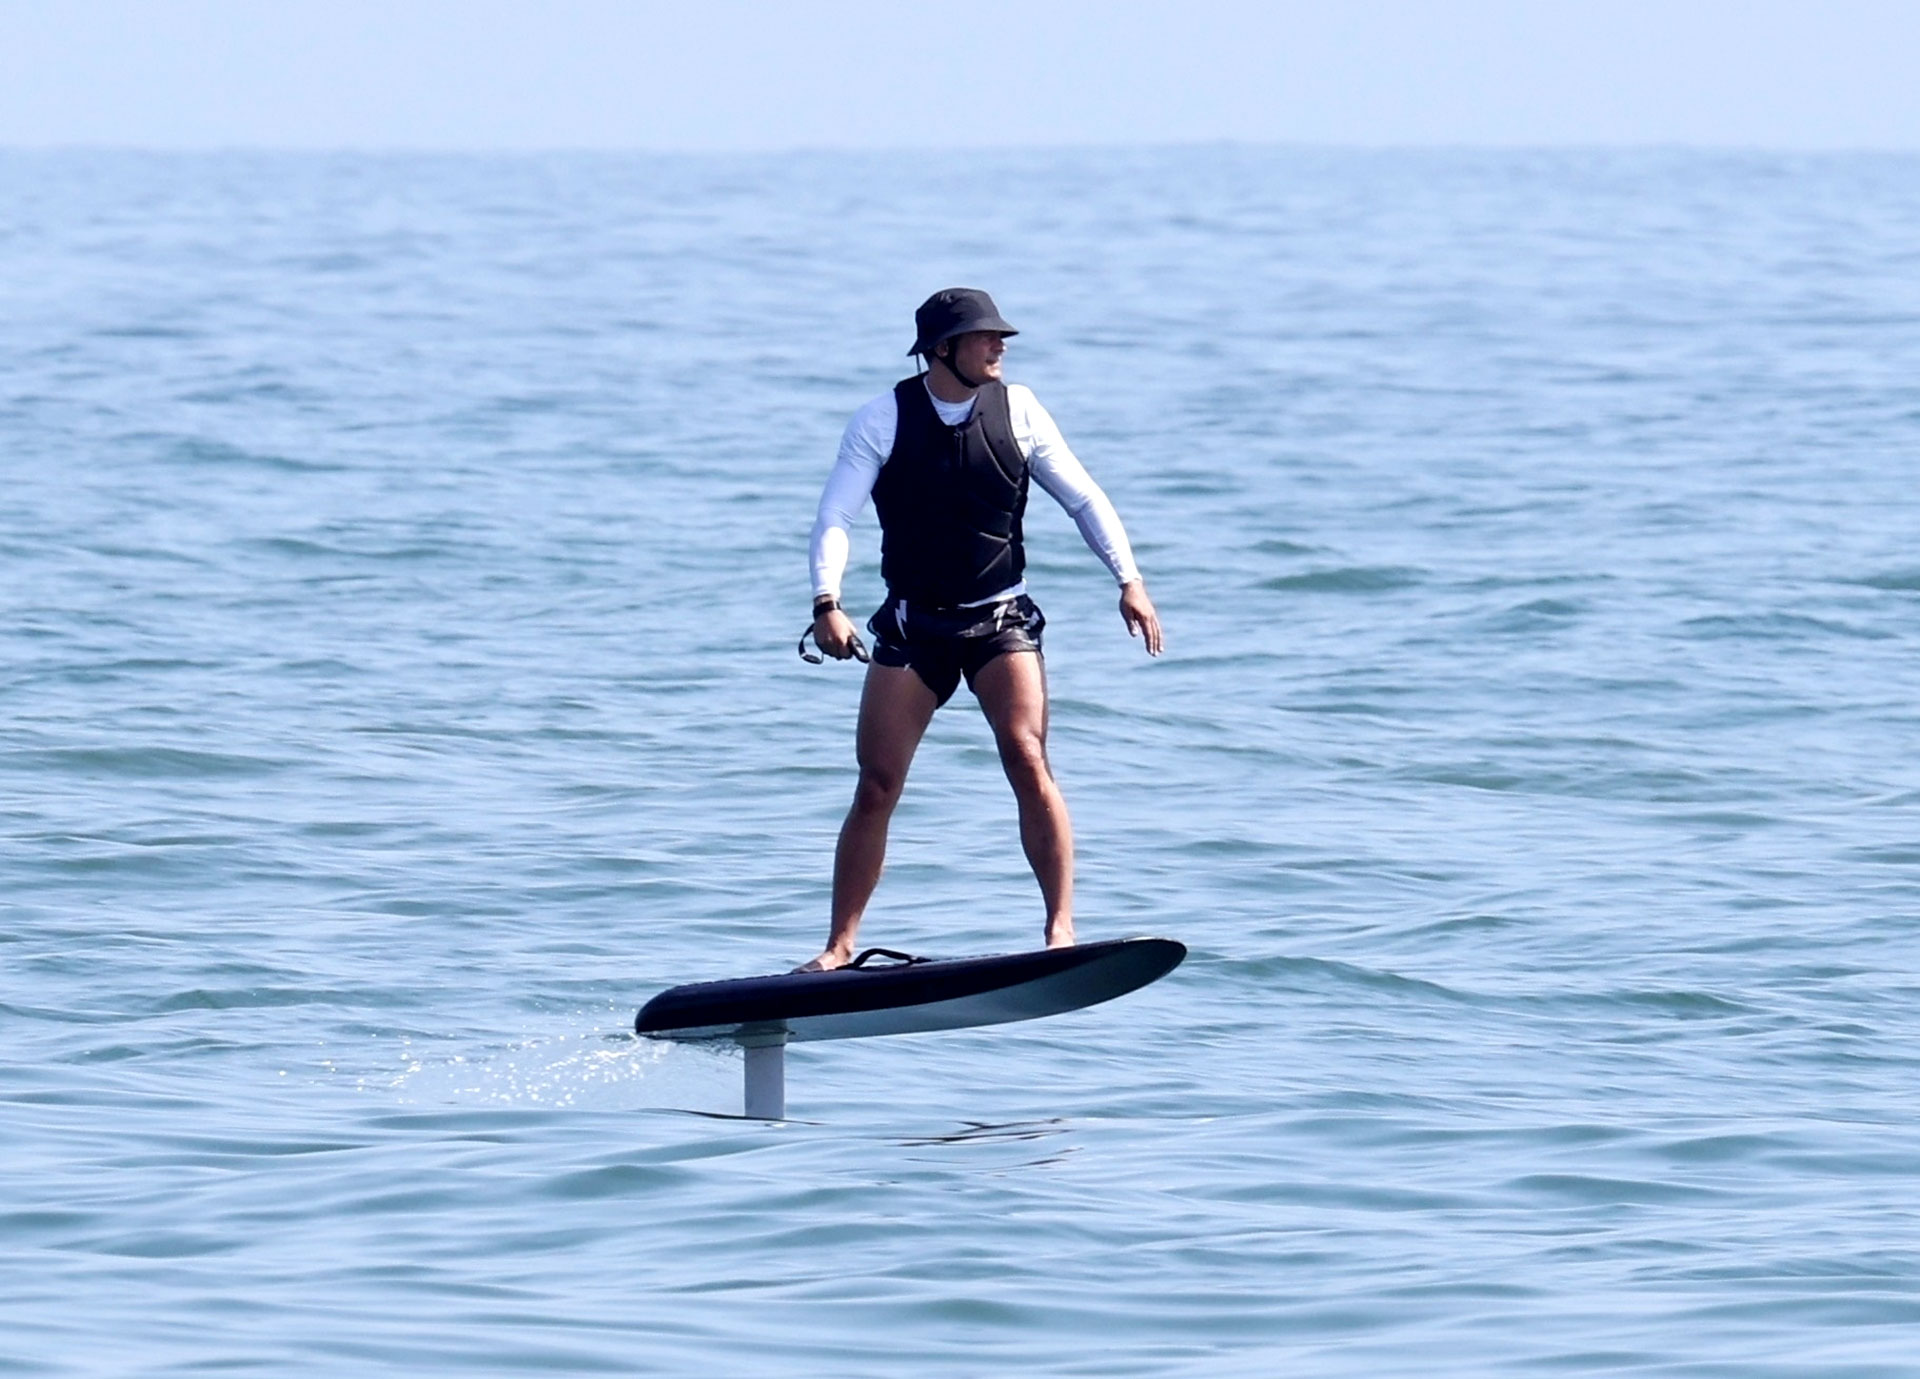 Amante de los deportes acuáticos, Orlando Bloom aprovechó para surfear en la playa de Santa Bárbara. El actor disfrutó de un día de relax, tras haber sido papá de Daisy Dove Bloom, su primera hija con Katy Perry (Foto: Backgrid / The Grosby Group)